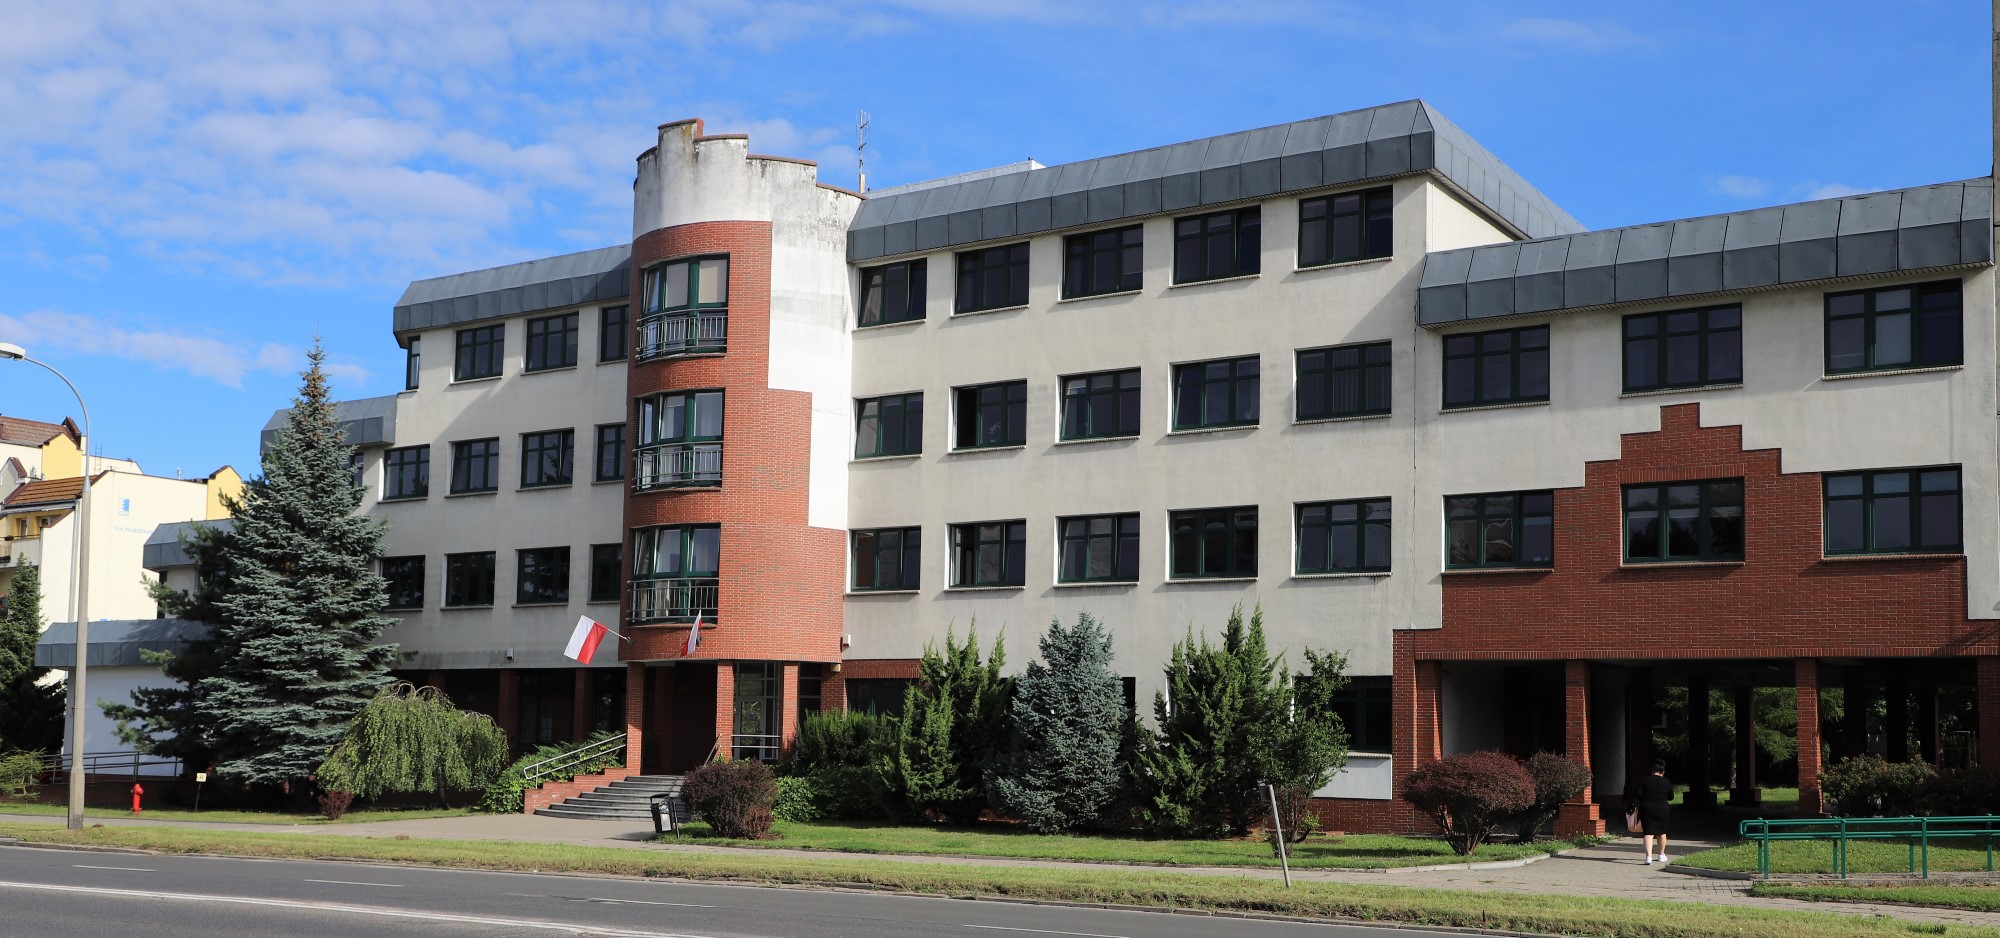 Fasada budynku, w którym znajduje się siedziba Izby Administracji Skarbowej w Olsztynie.